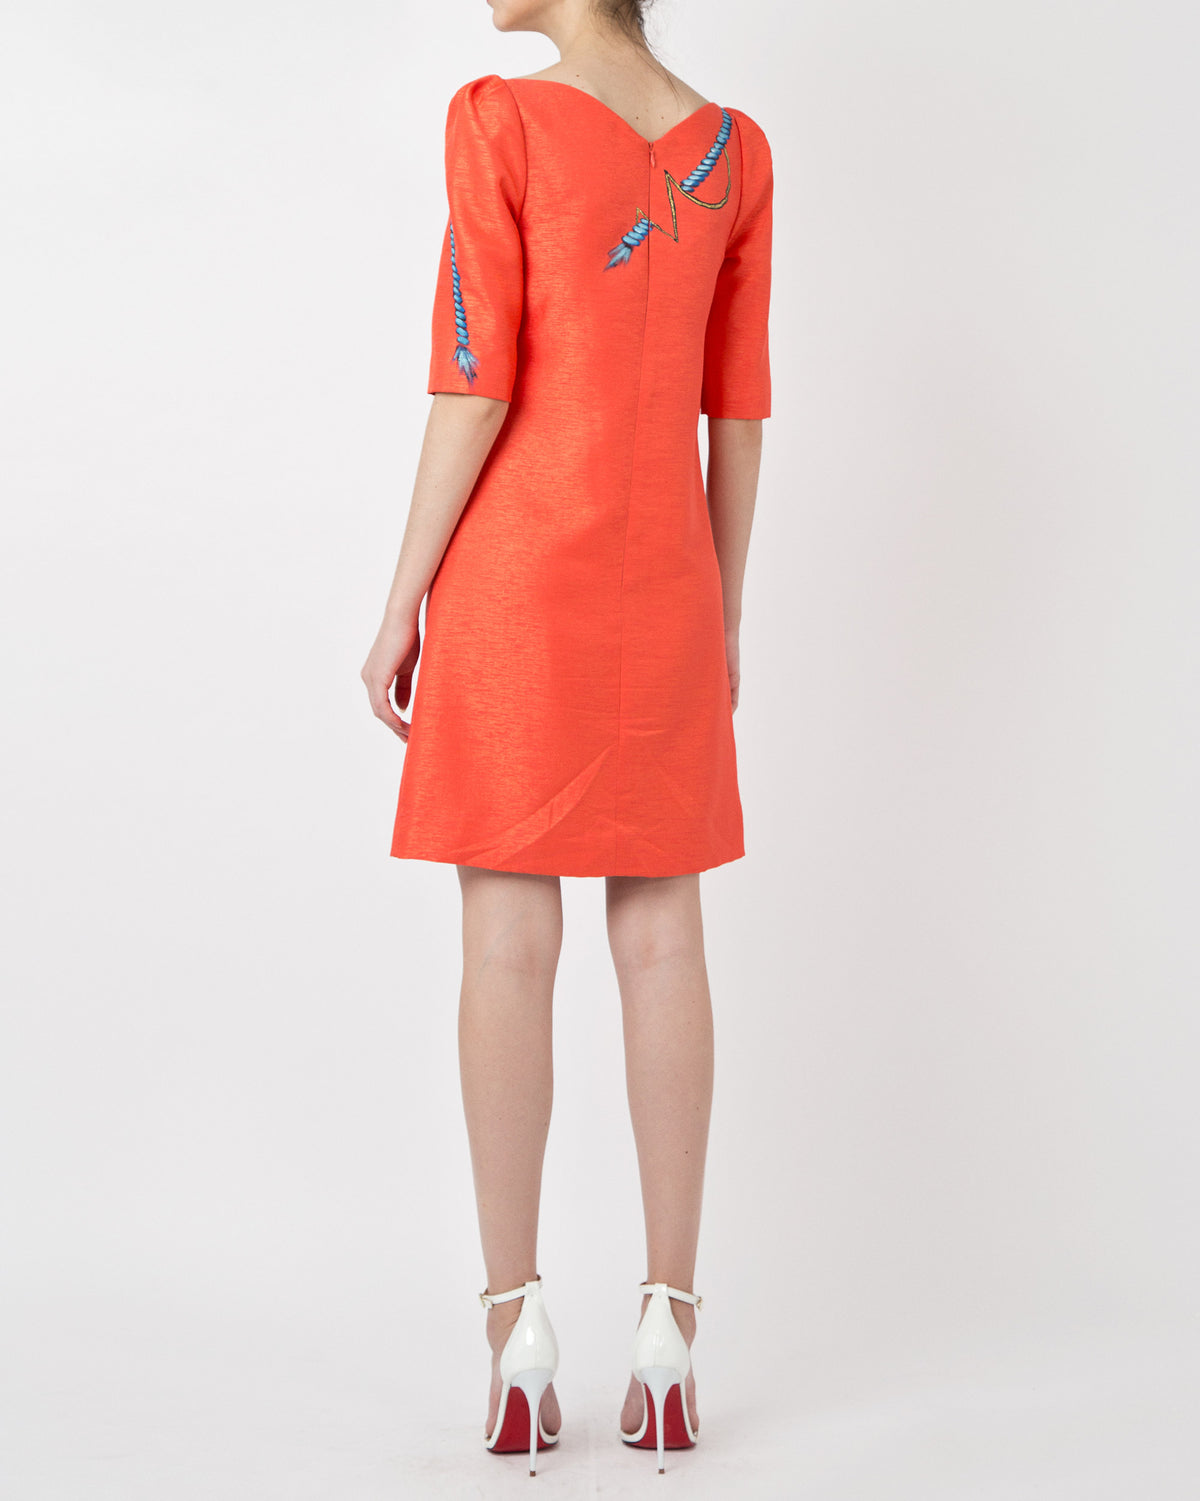 Ropes-Painted Tucked Sleeve Orange Taffeta Dress